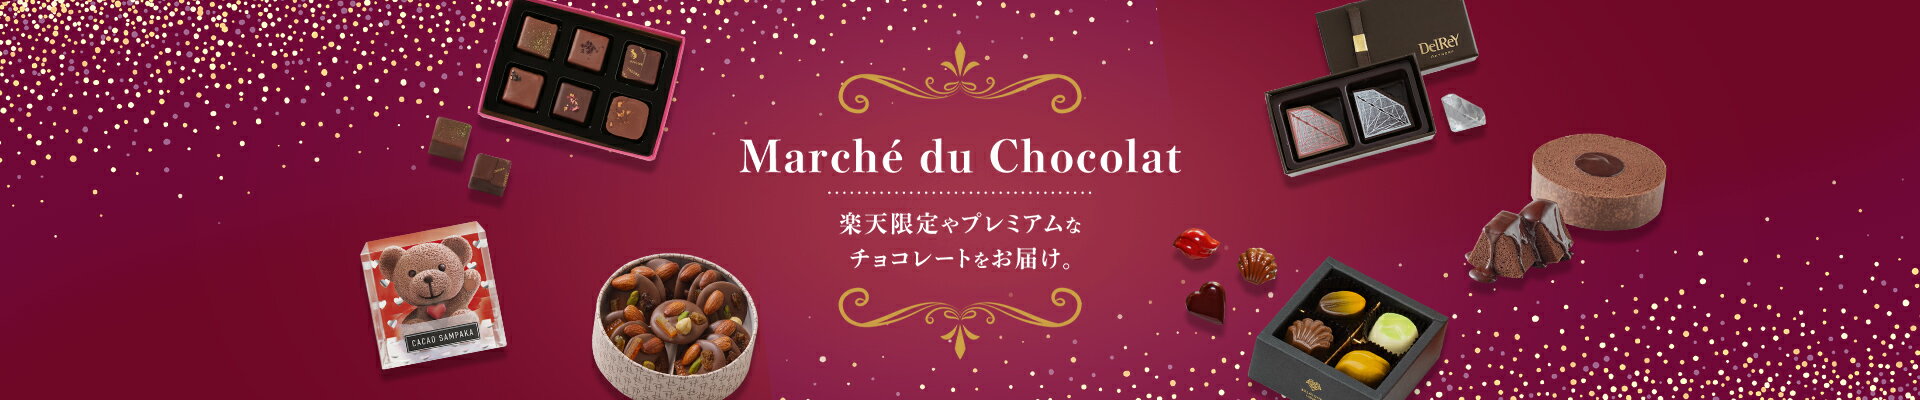 Marché du Chocolat